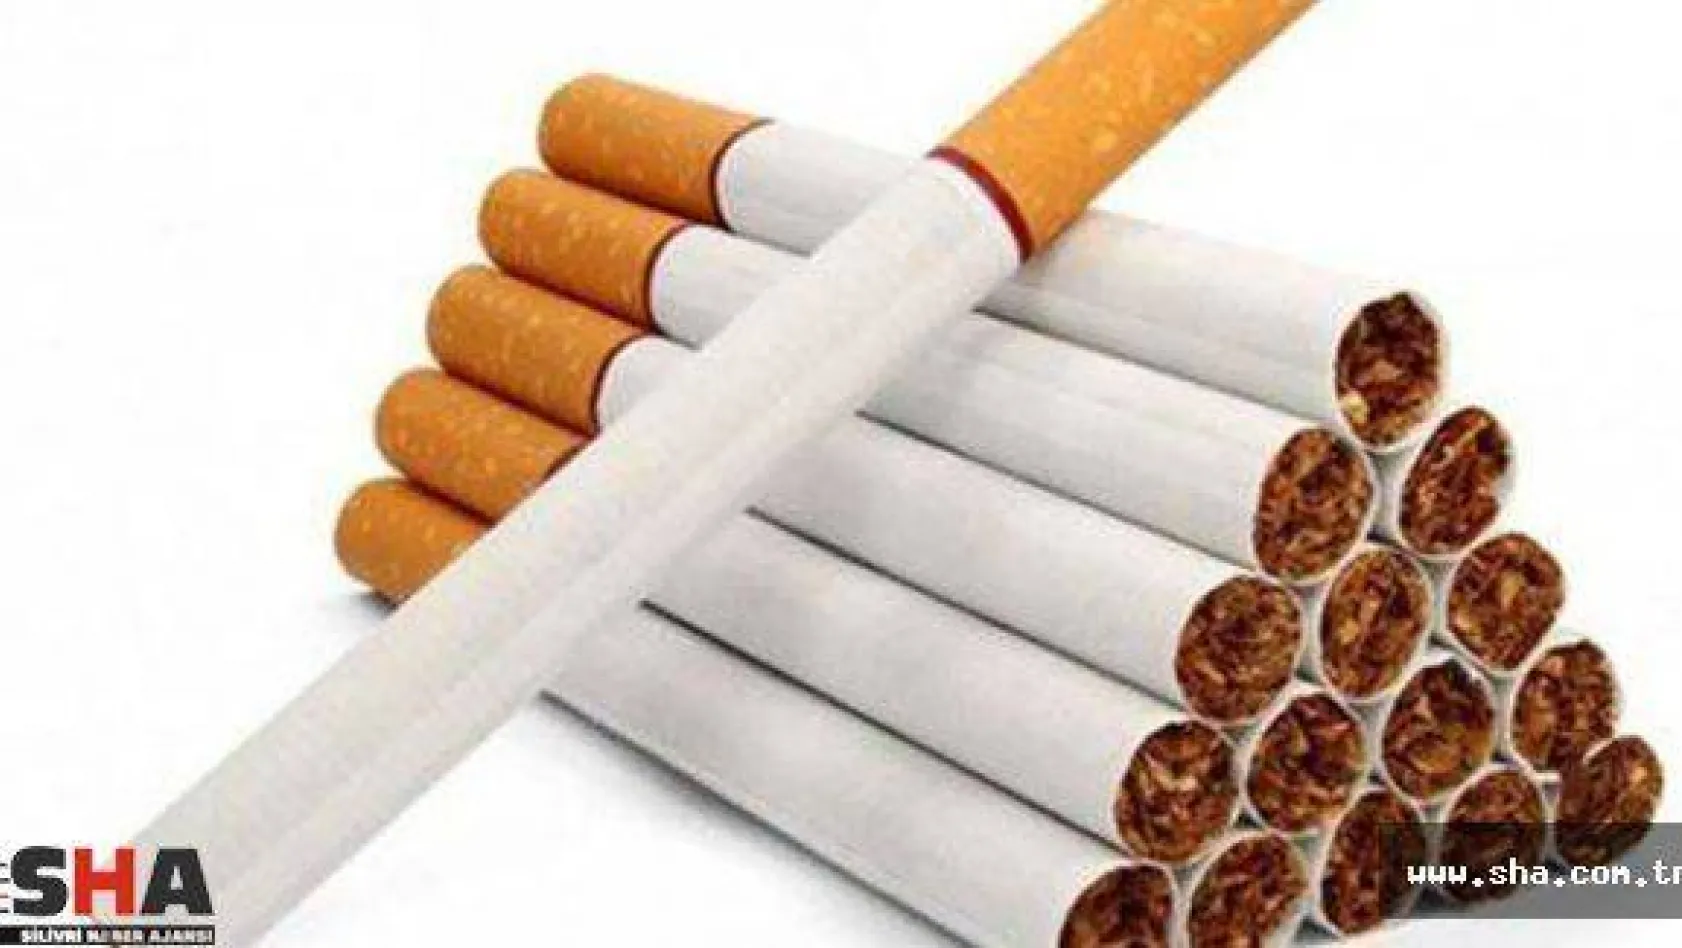 Sigara yasağında yeni dönem!